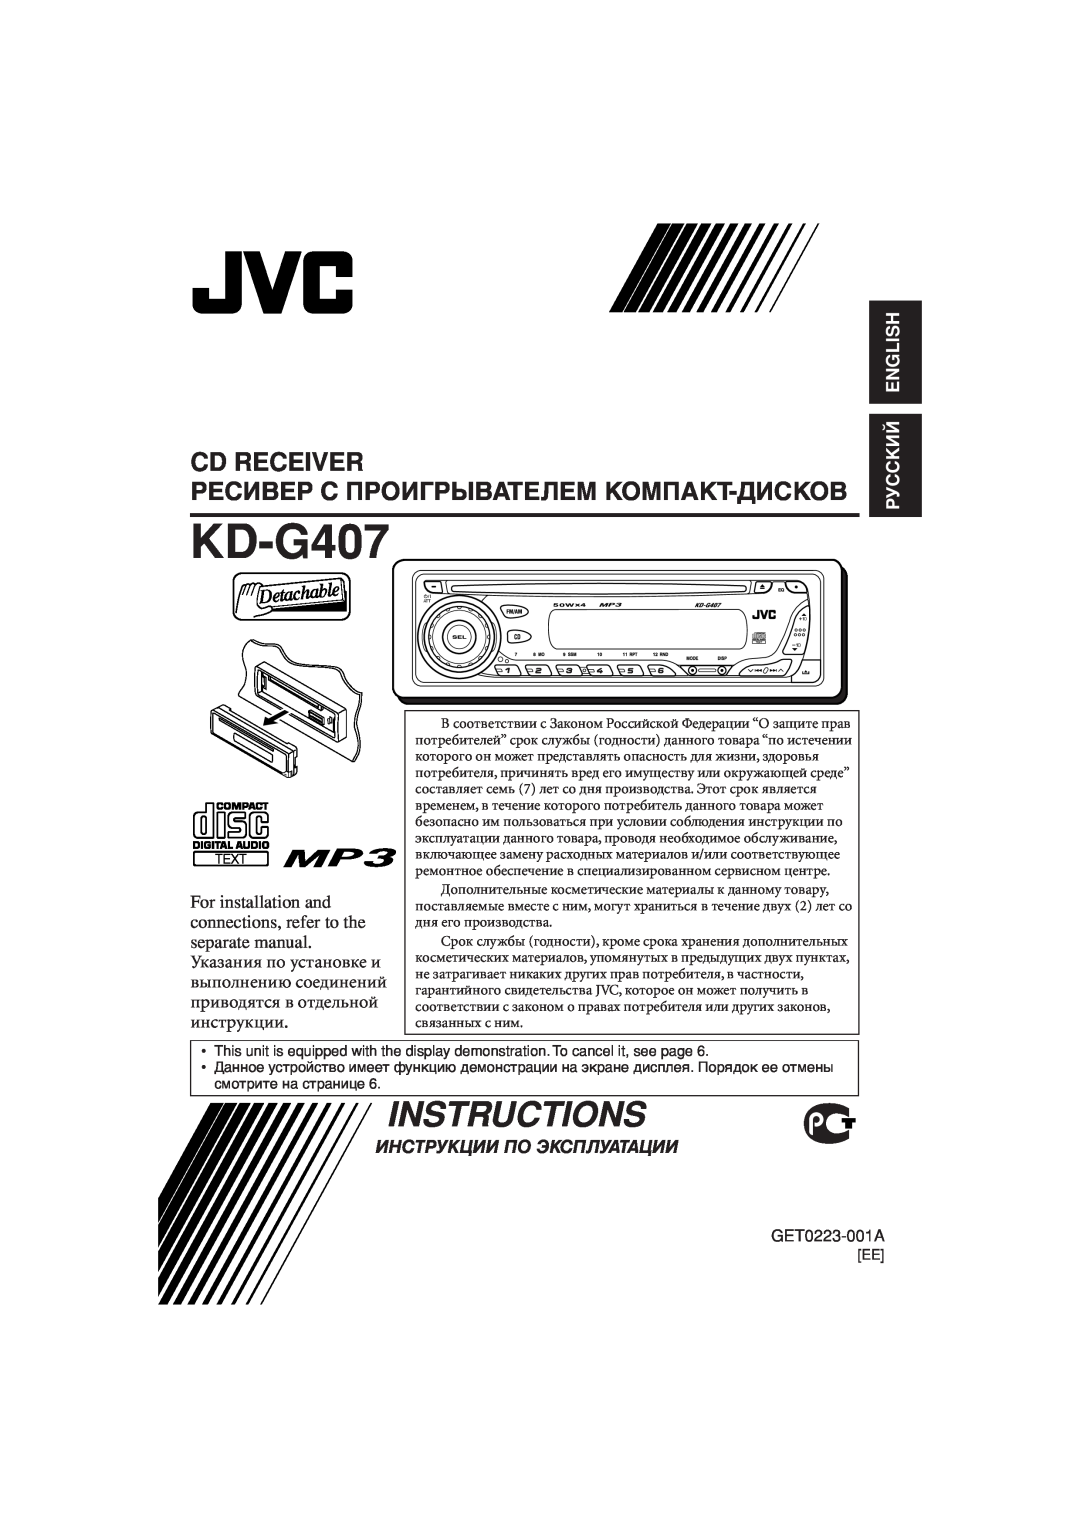 JVC KD-G407 manual Ресивер С Проигрывателем Компакт-Дисков, Руcckий English, Instructions, Cd Receiver 